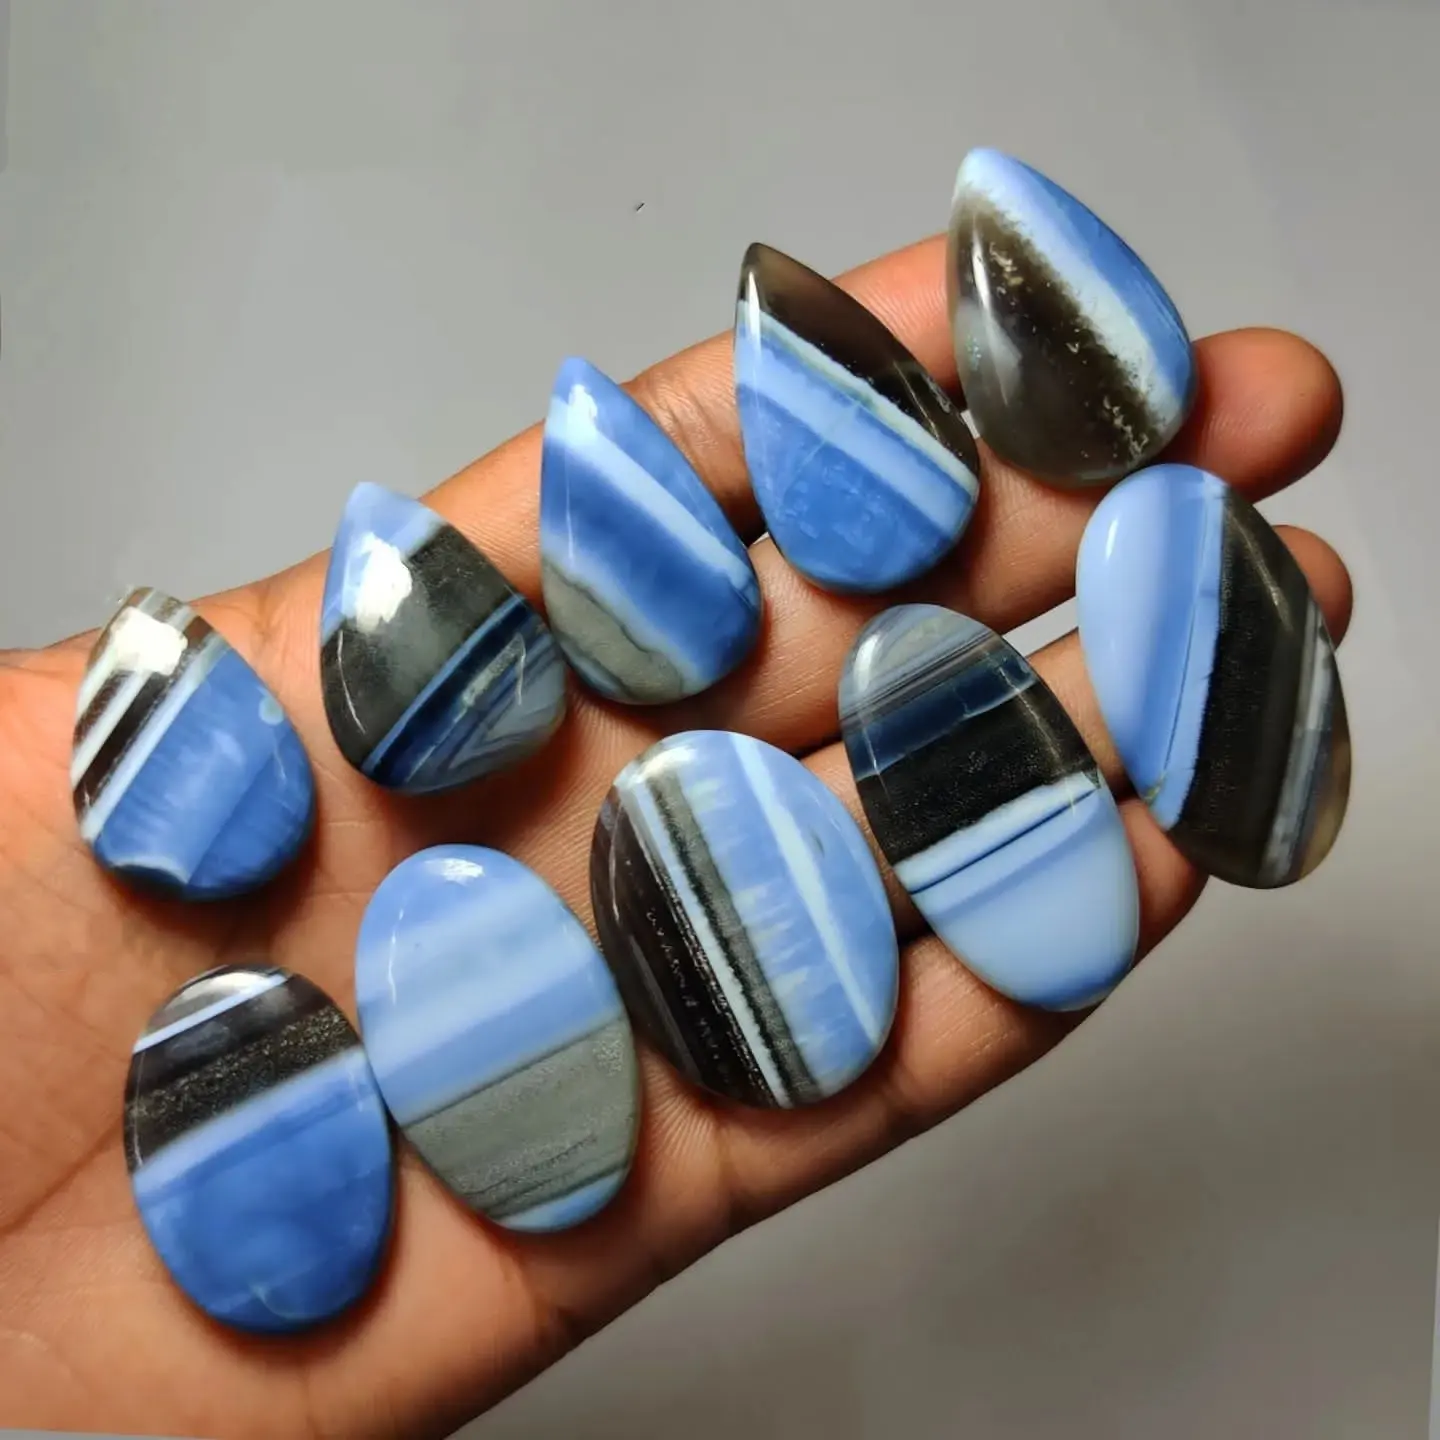 Blue Owyhee Opal natural blue opal cabochon gemme sciolte prezzo all'ingrosso all'ingrosso tutte le dimensioni e forme disponibili